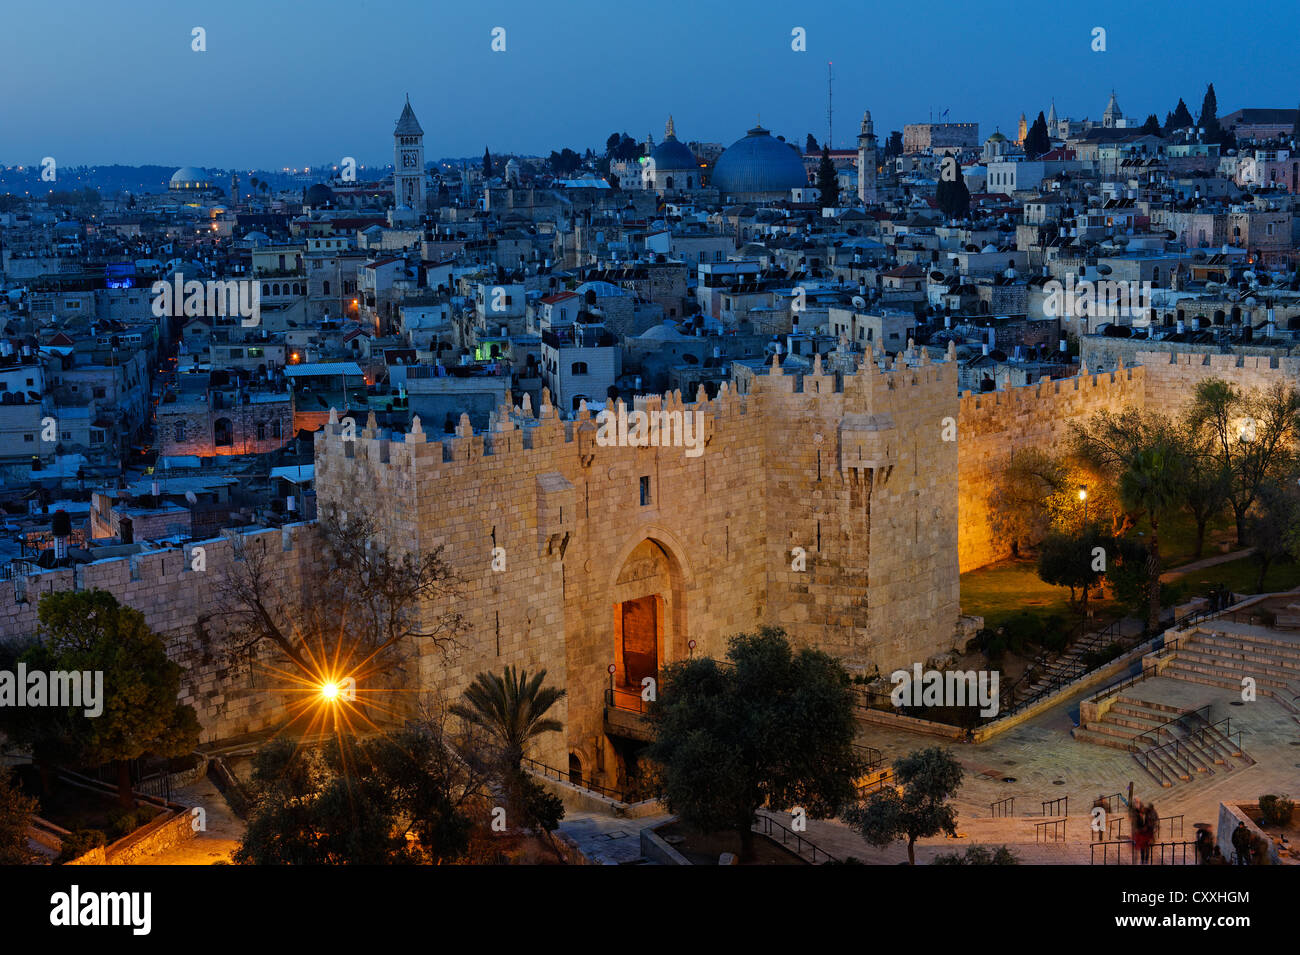 Porte de Damas avec remparts, crépuscule, vieille ville, Jérusalem, de Paulus guest house, Israël, Moyen Orient Banque D'Images